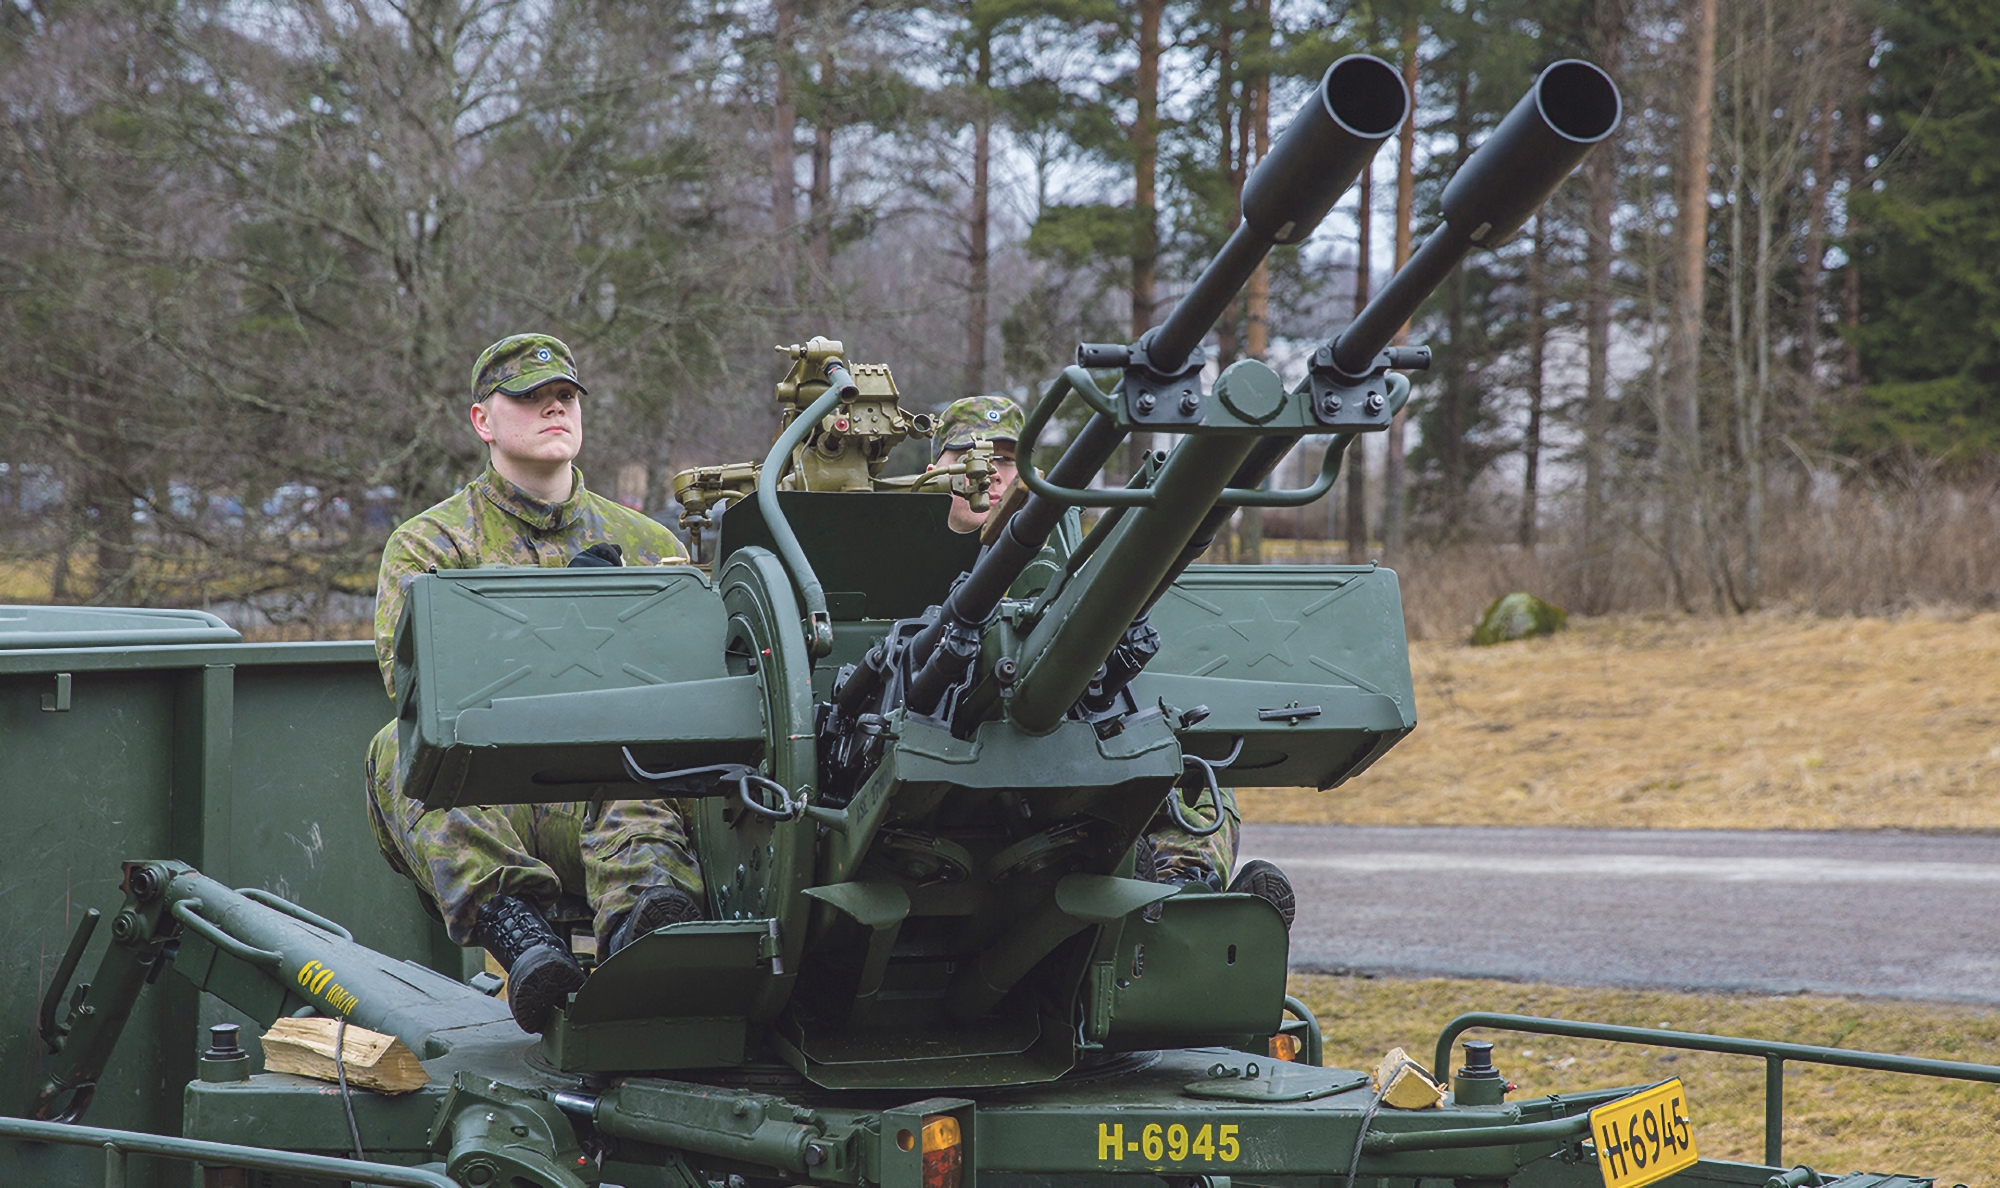 APU otrzymało fińskie działa przeciwlotnicze 23 ItK 61, mogą wystrzeliwać do 2000 strzałów na minutę i trafiać w cele w odległości 2,5 km